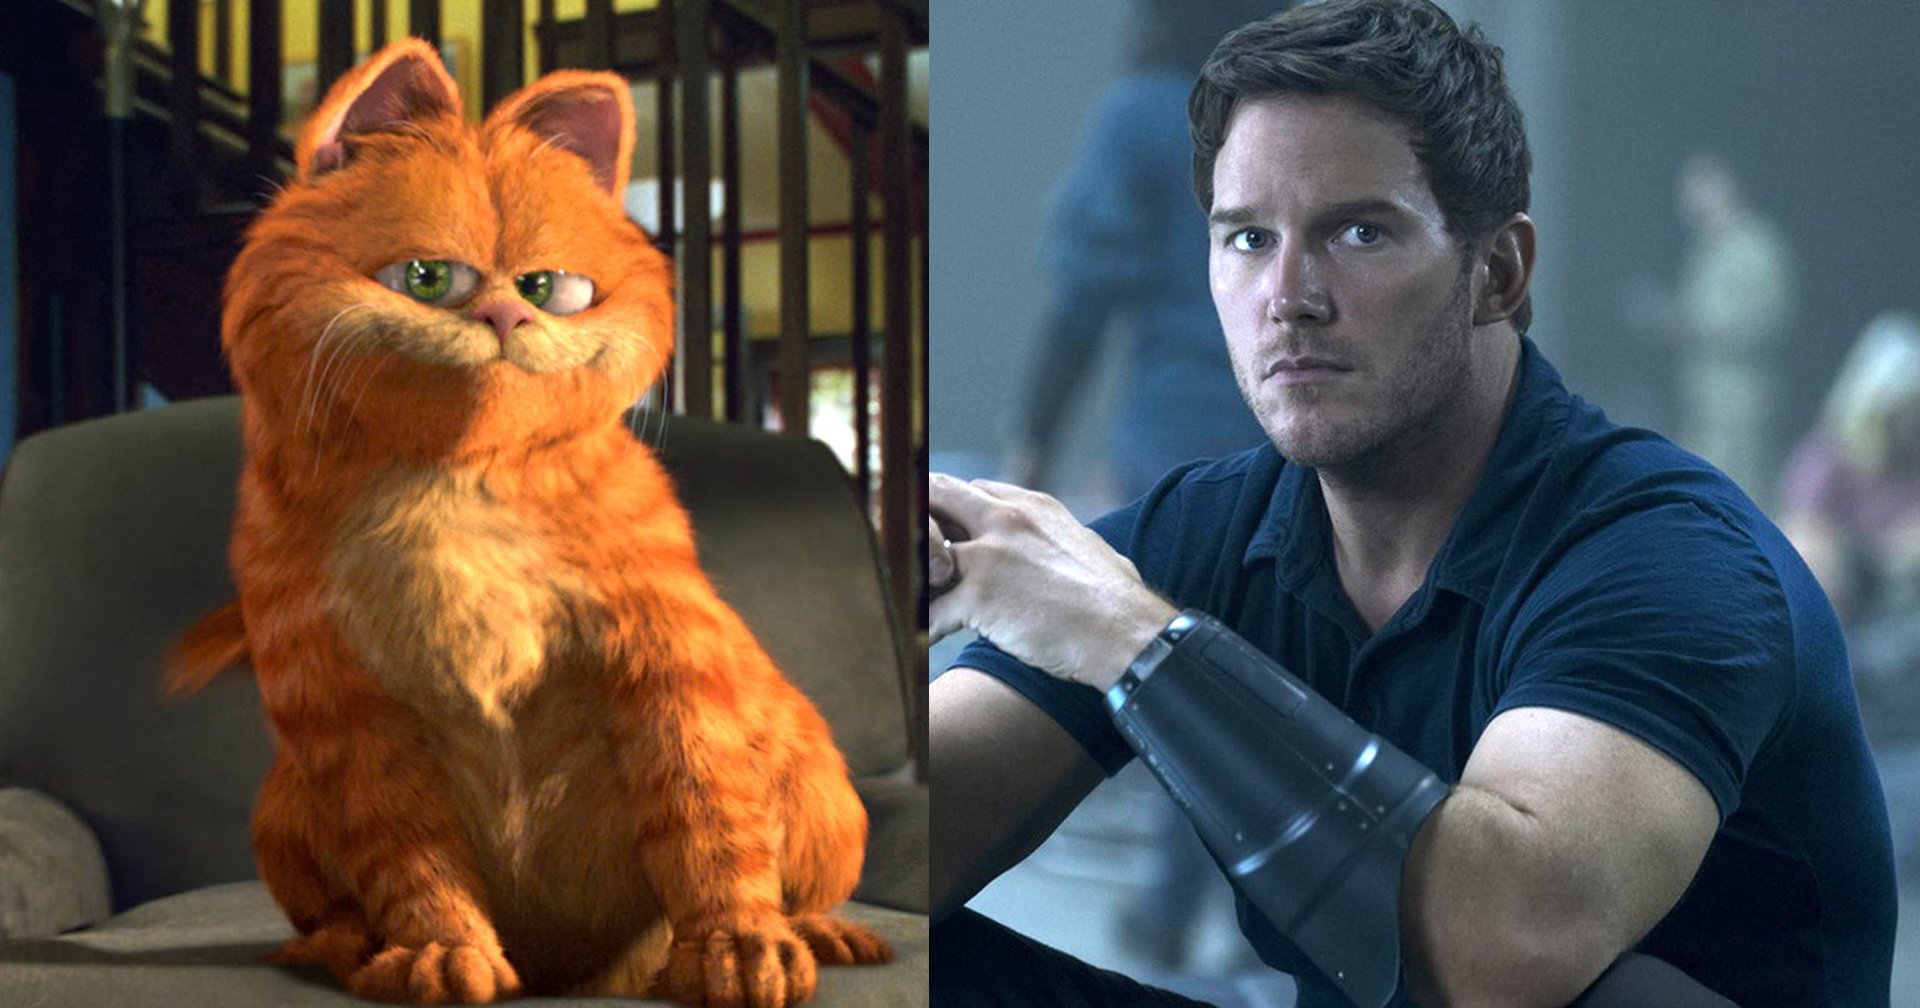 "คริส แพร็ตต์" จะให้เสียงพากย์เป็น Garfield ในแอนิเมชันเรื่องใหม่ล่าสุด